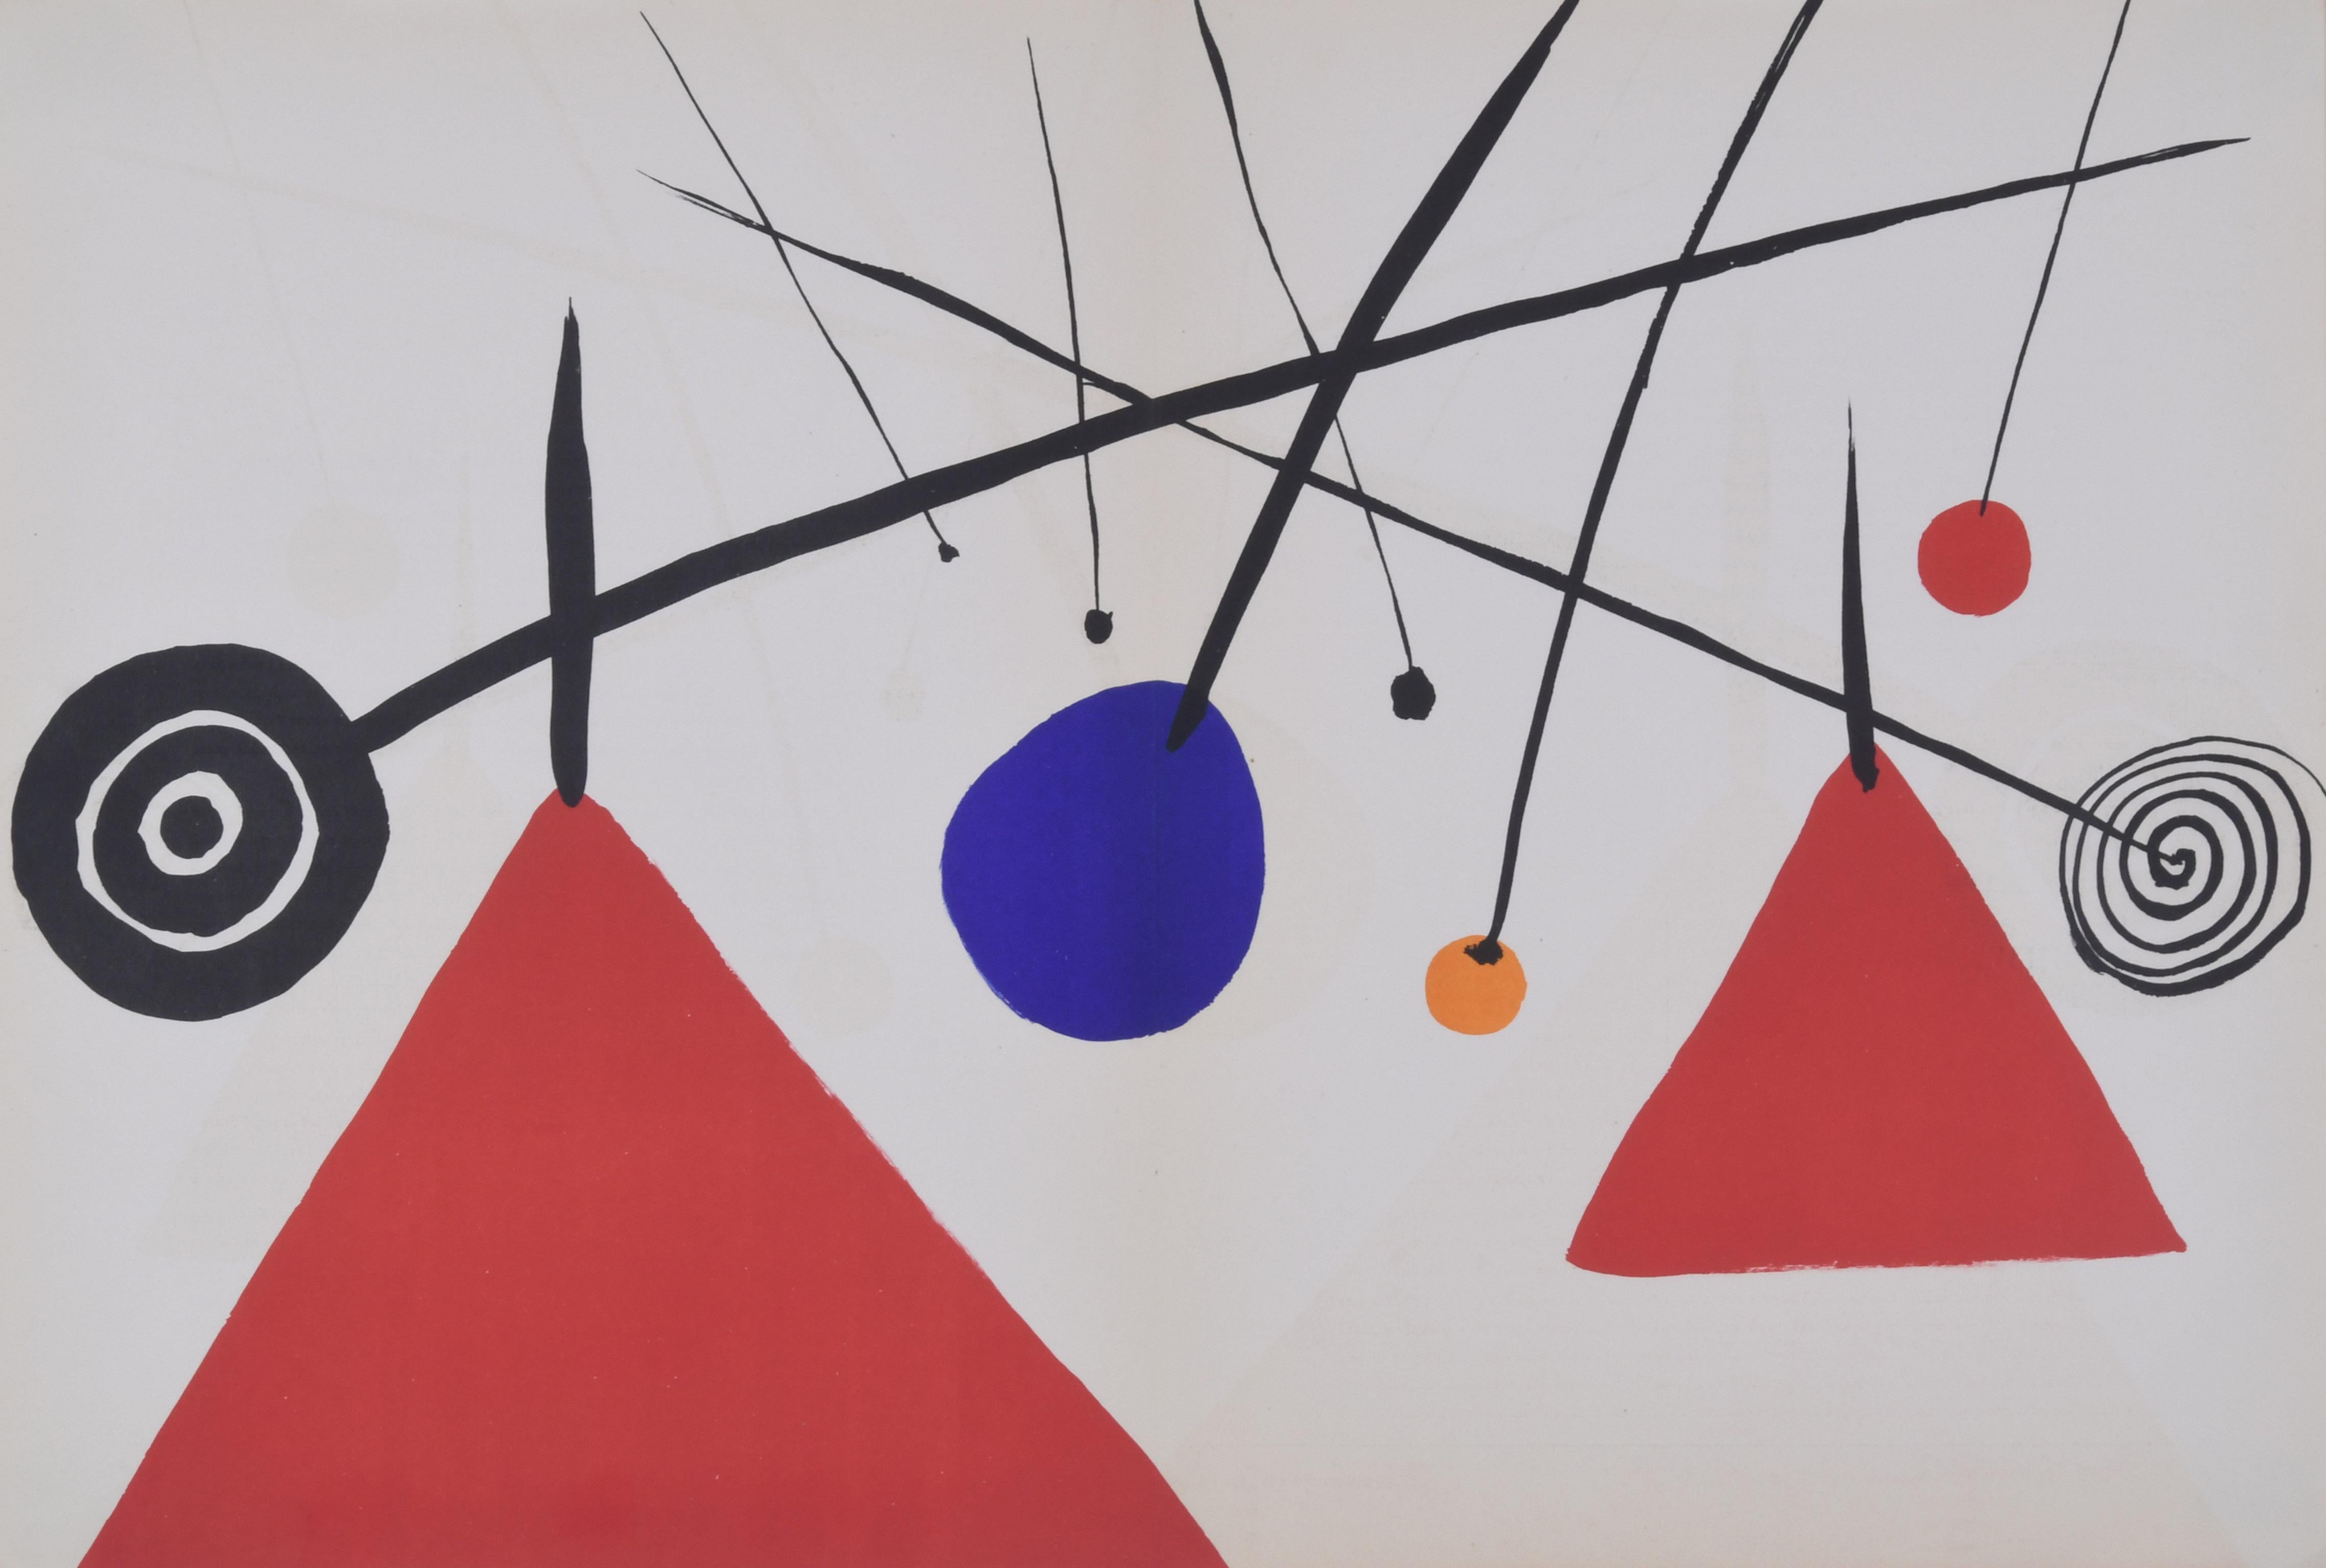 Alexander Calder Abstract Print – Unbenannt